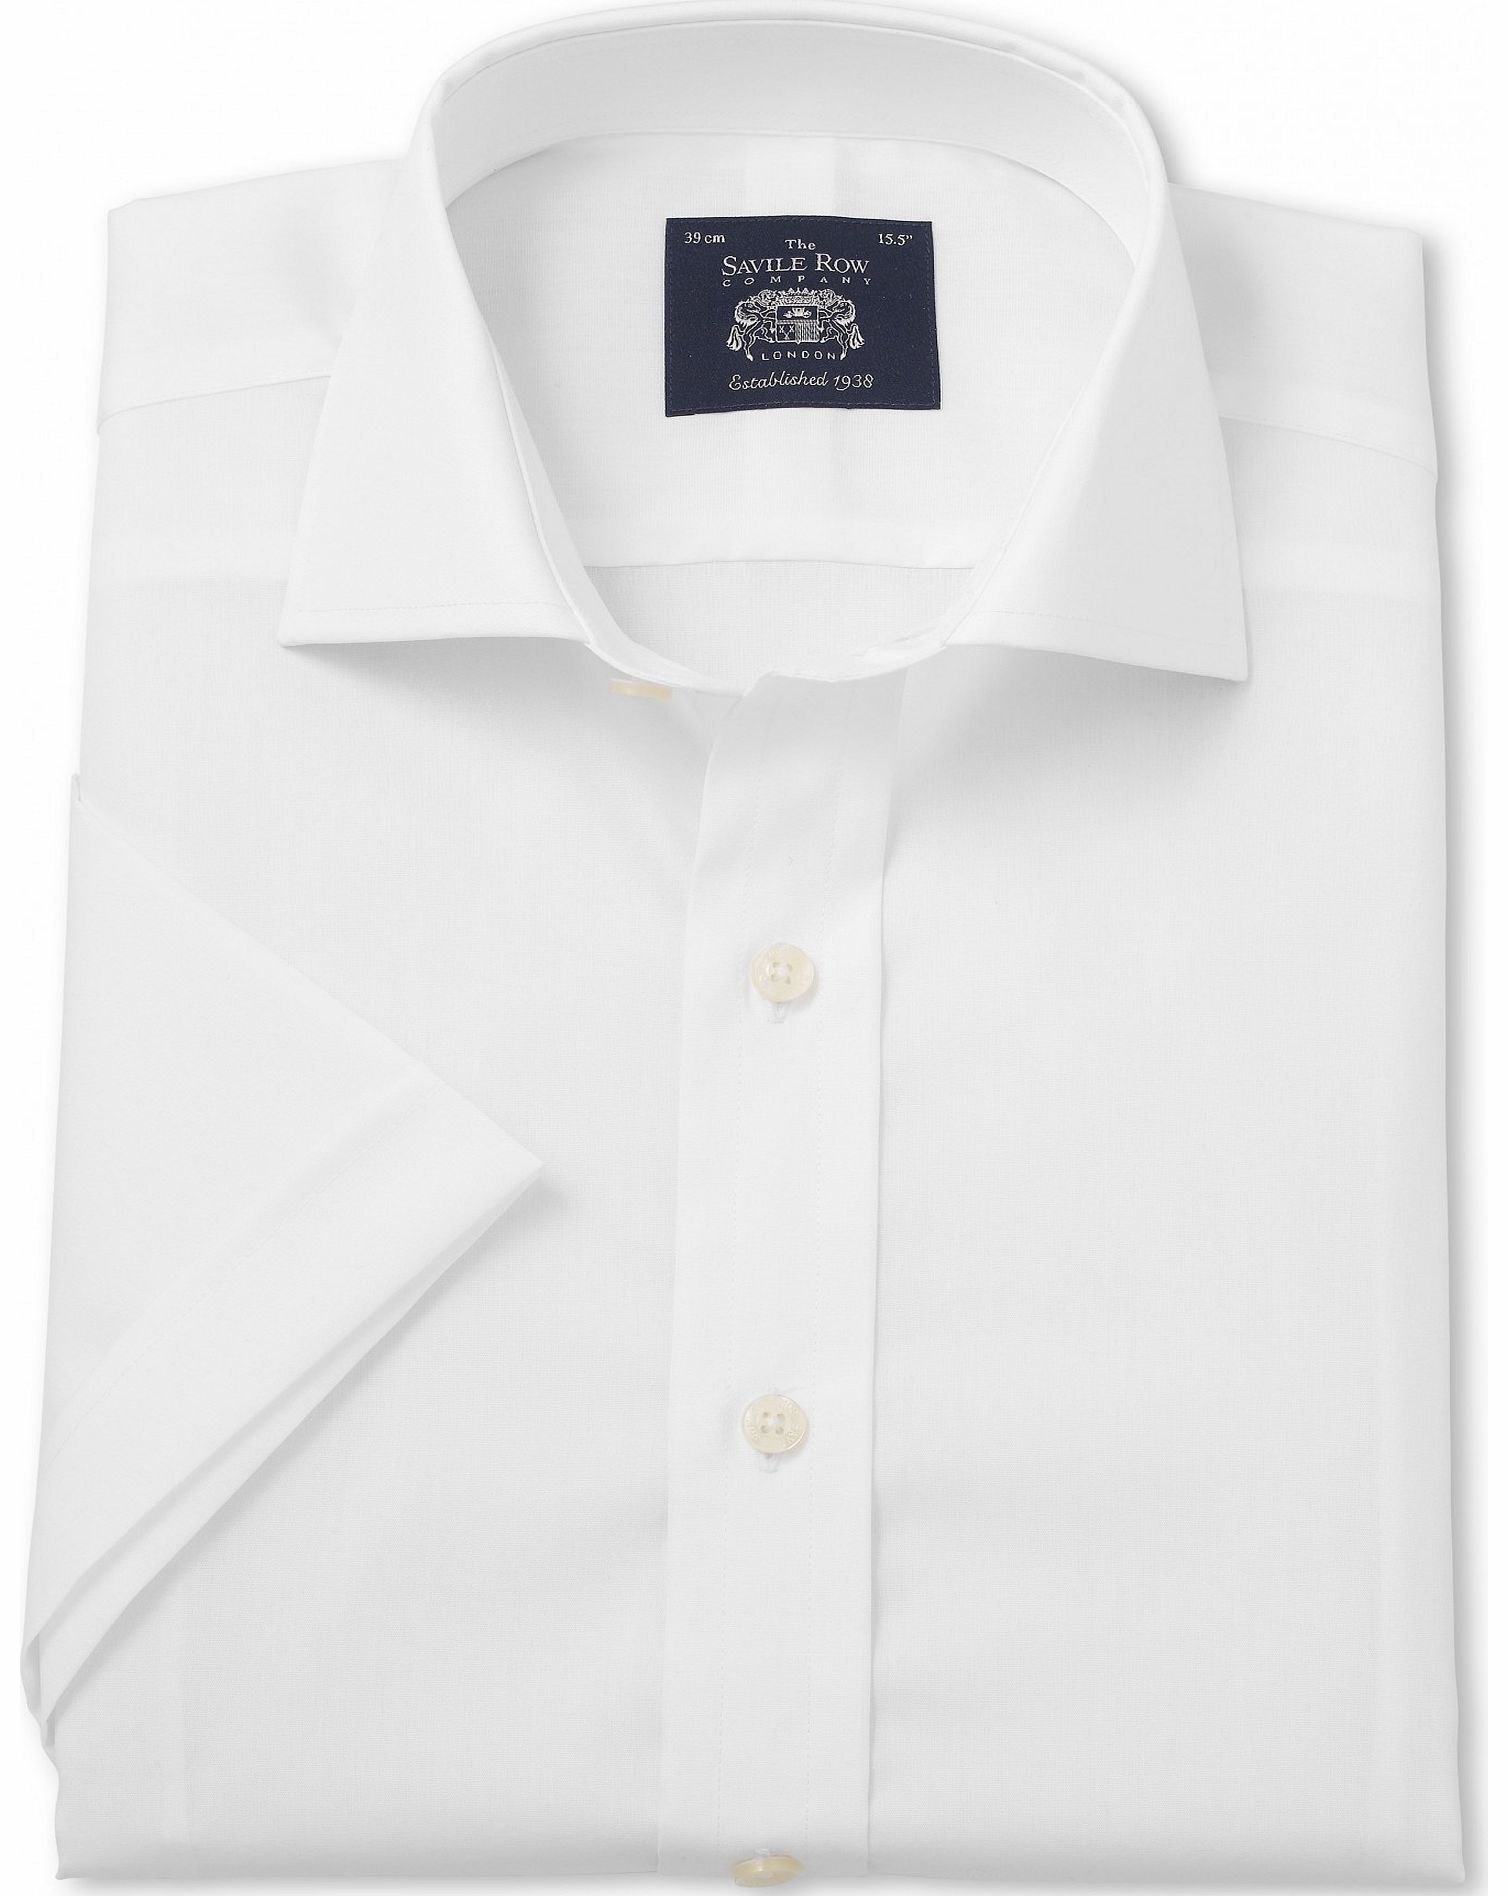 White Slim Fit Short Sleeve Shirt 15`` Short